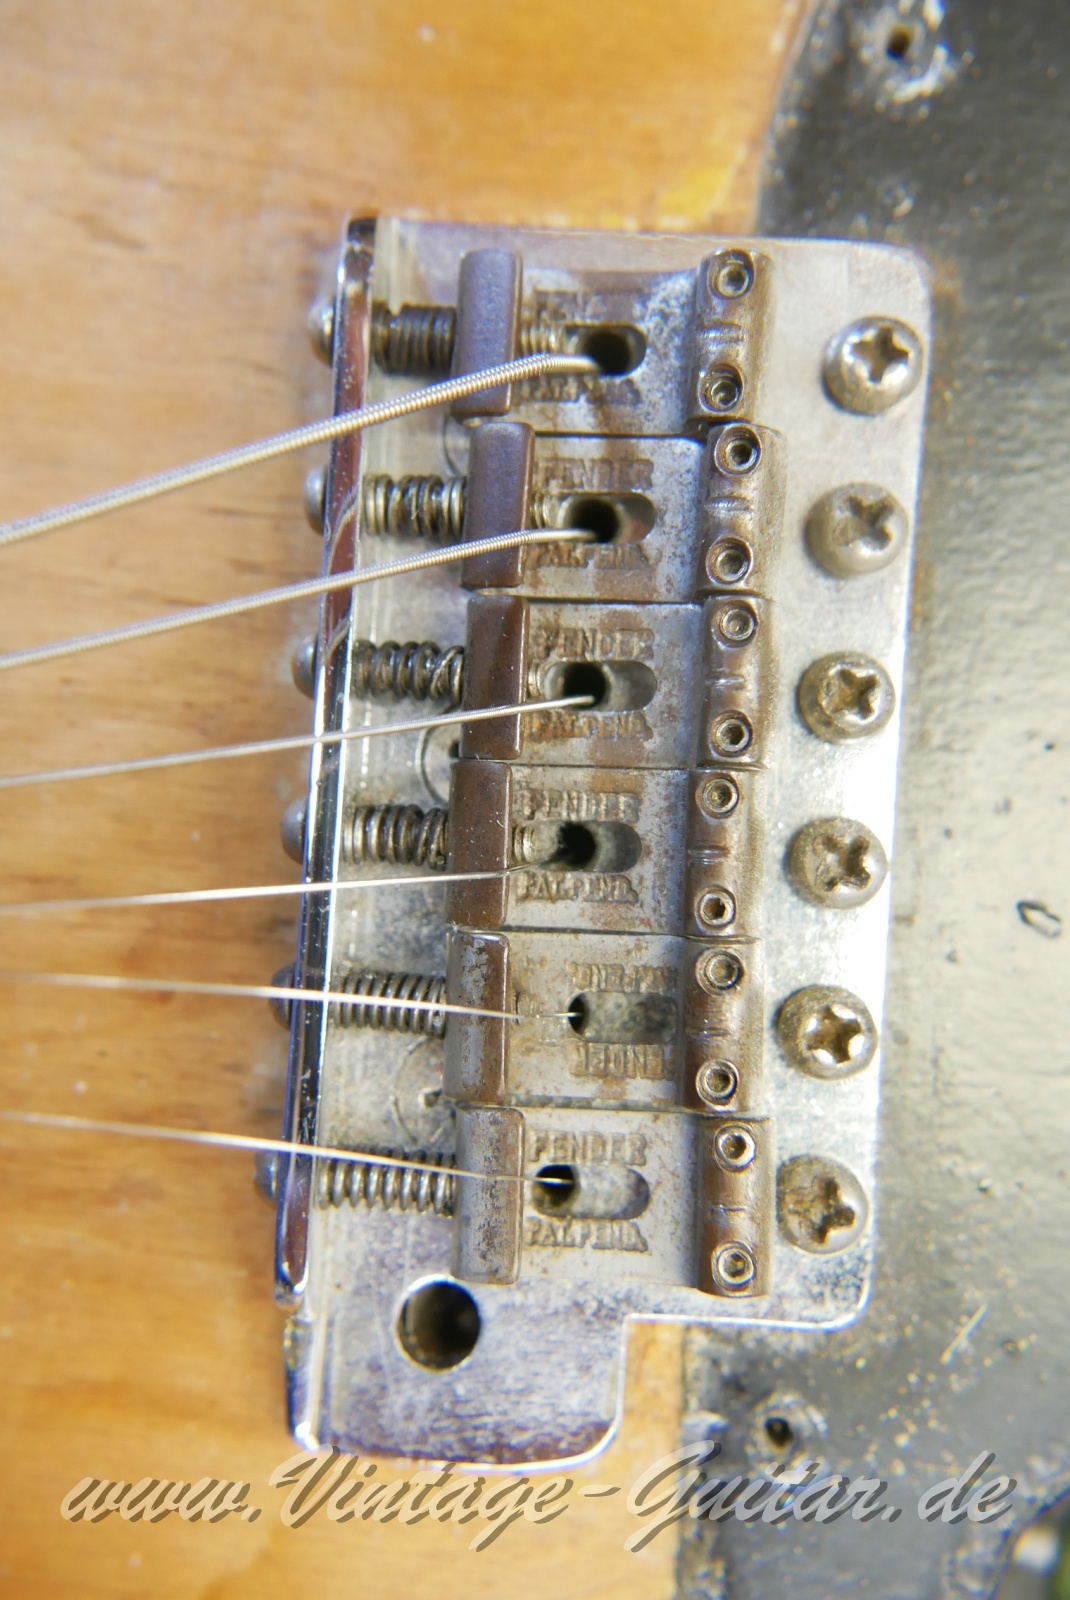 Fender_Stratocaster_body_stripped_1966-021.JPG